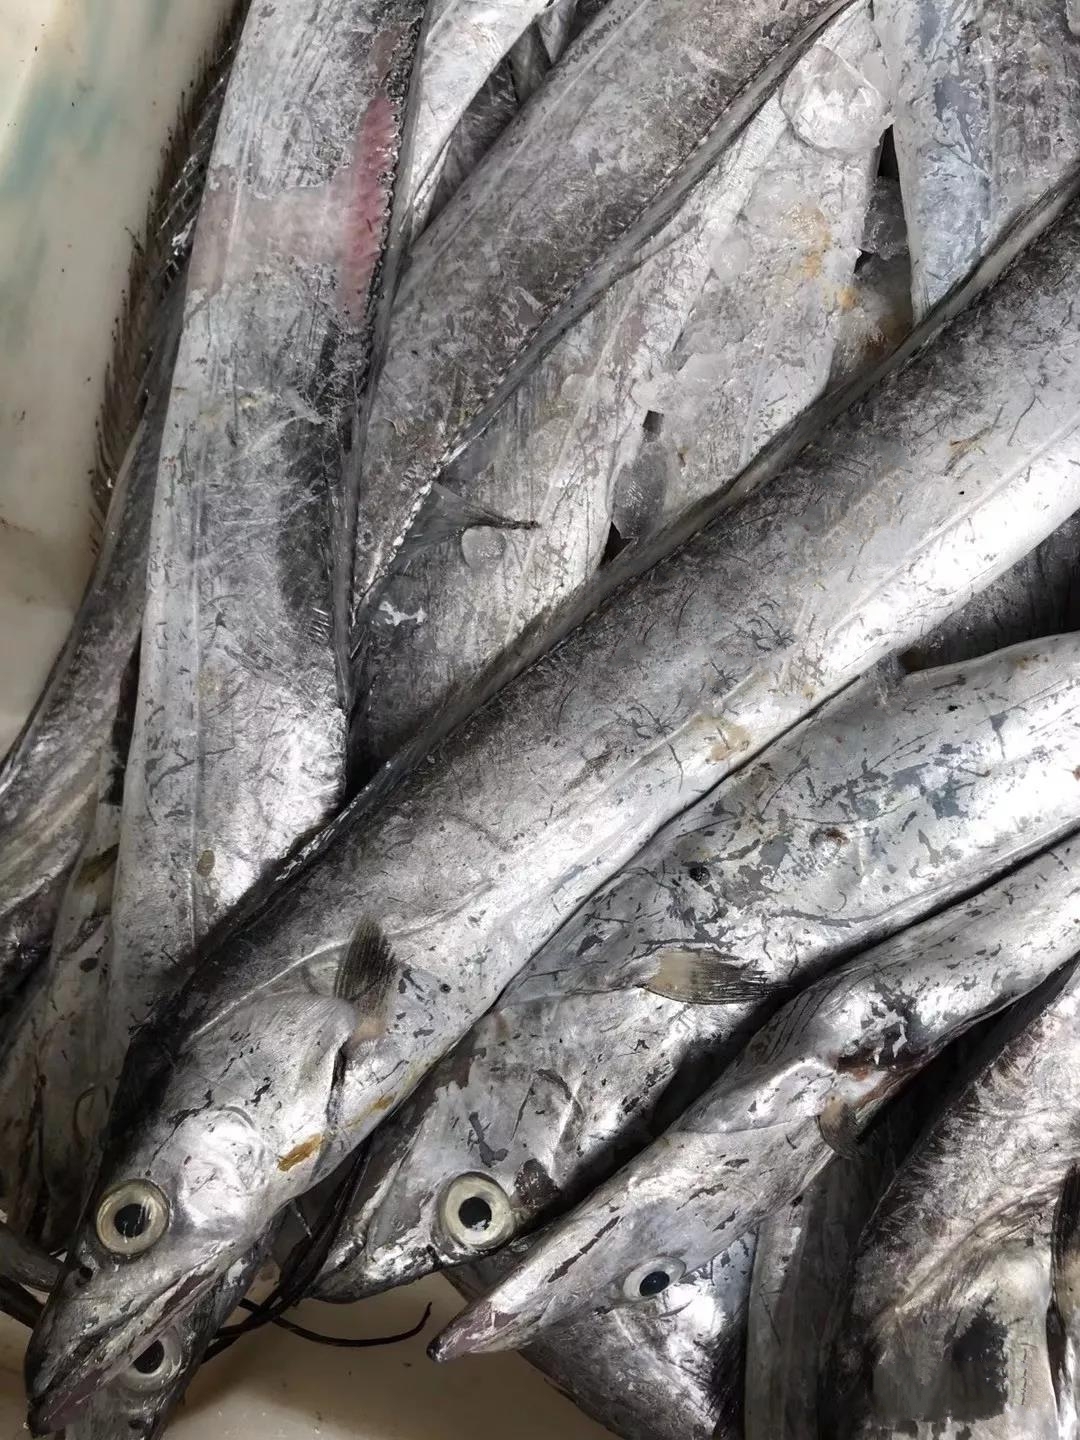 我曾在沈家门东河菜市场目睹过一位外地客人在挑带鱼,许是慕名而来却